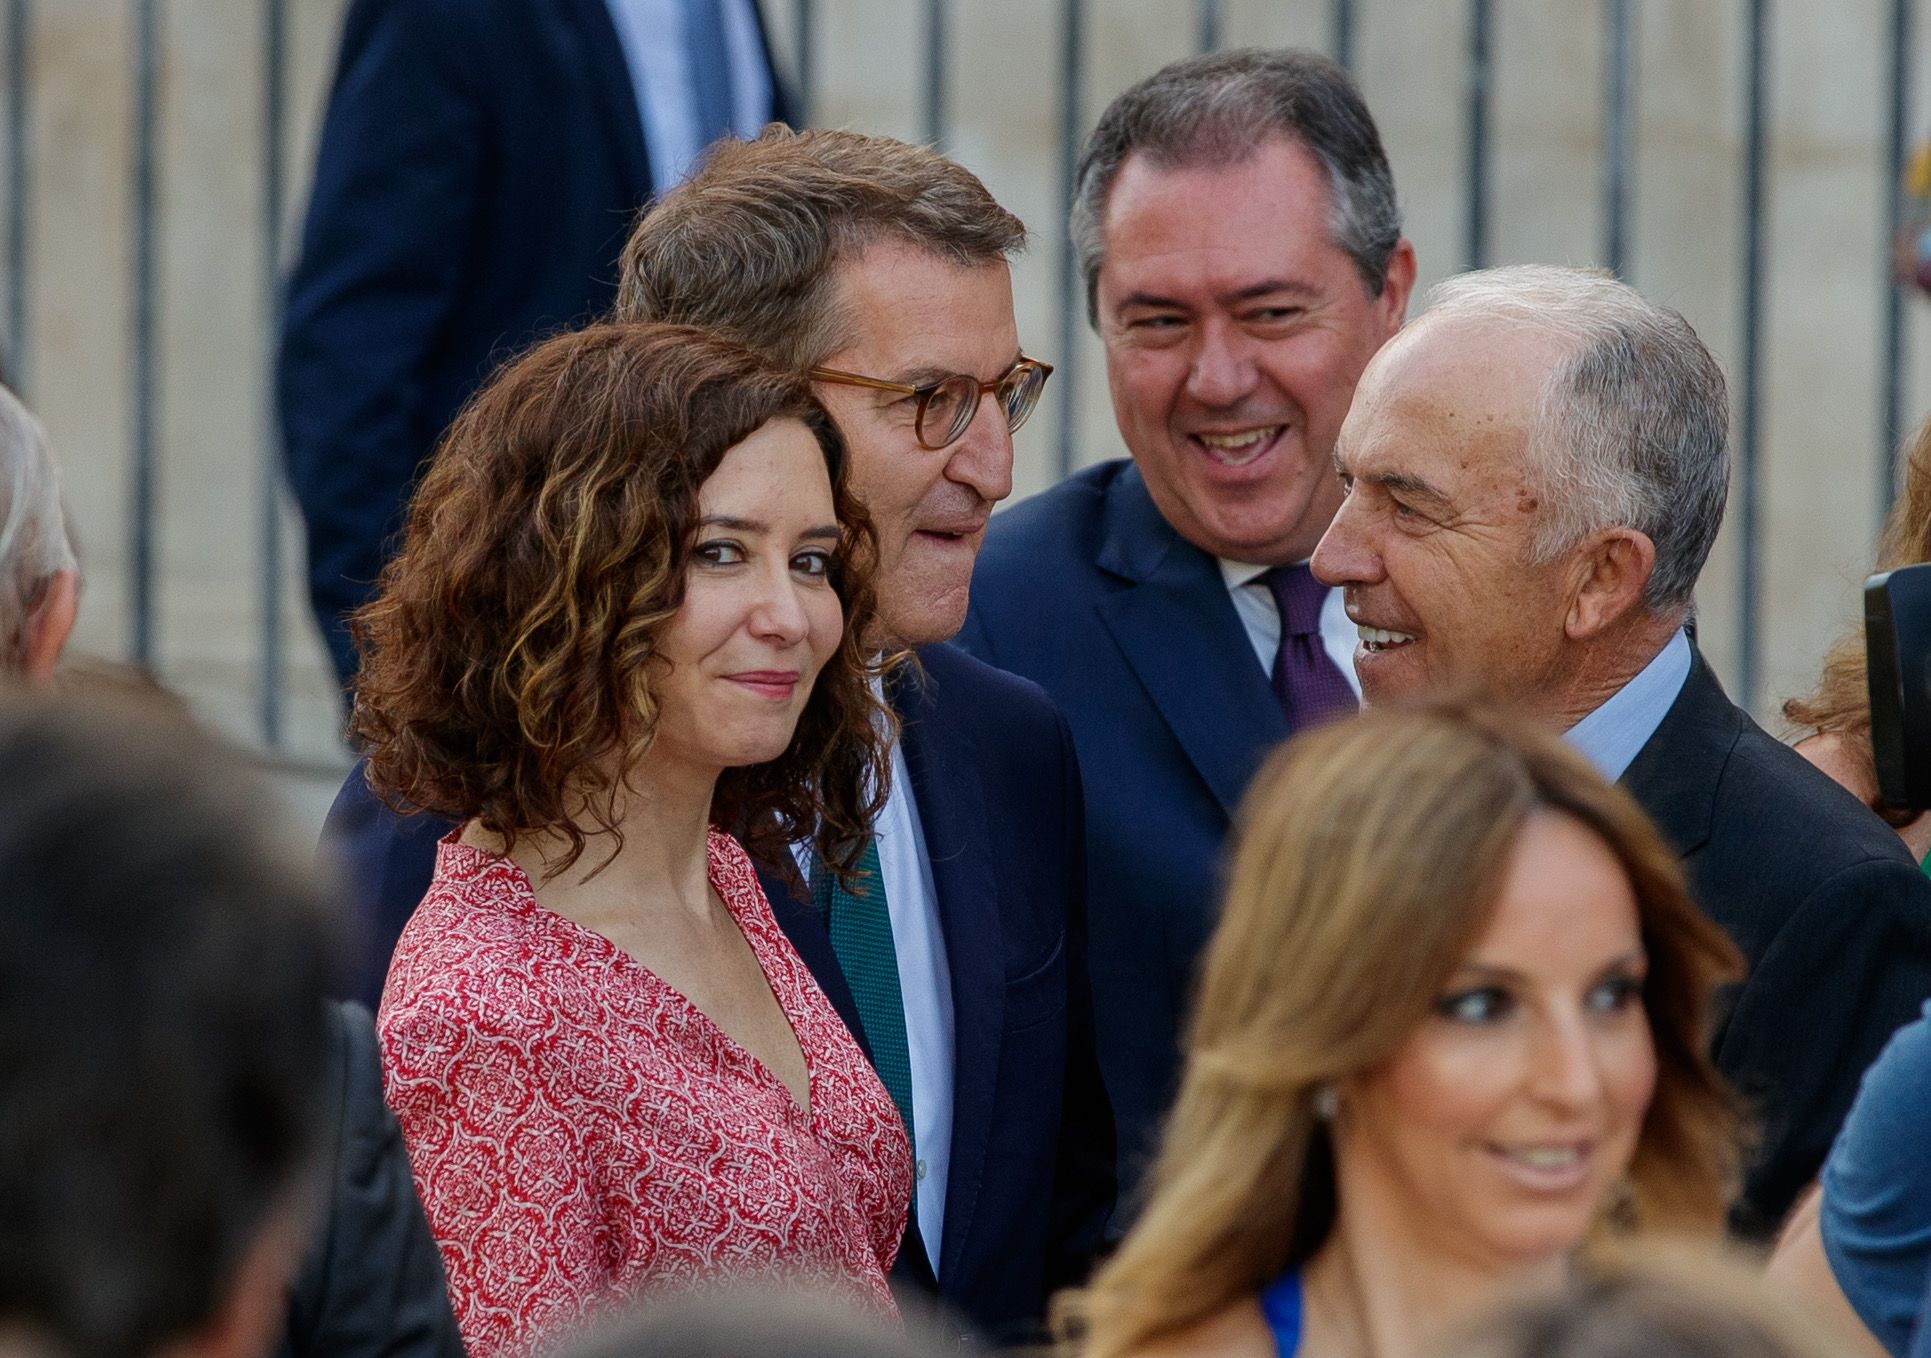 La presidenta de la Comunidad de Madrid, Isabel Díaz Ayuso; del PP, Alberto Núñez Feijóo, y el líder del PSOE andaluz, Juan Espadas (2d ) conversan antes de la jura del presidente de la Junta de Andalucía, Juanma Moreno.